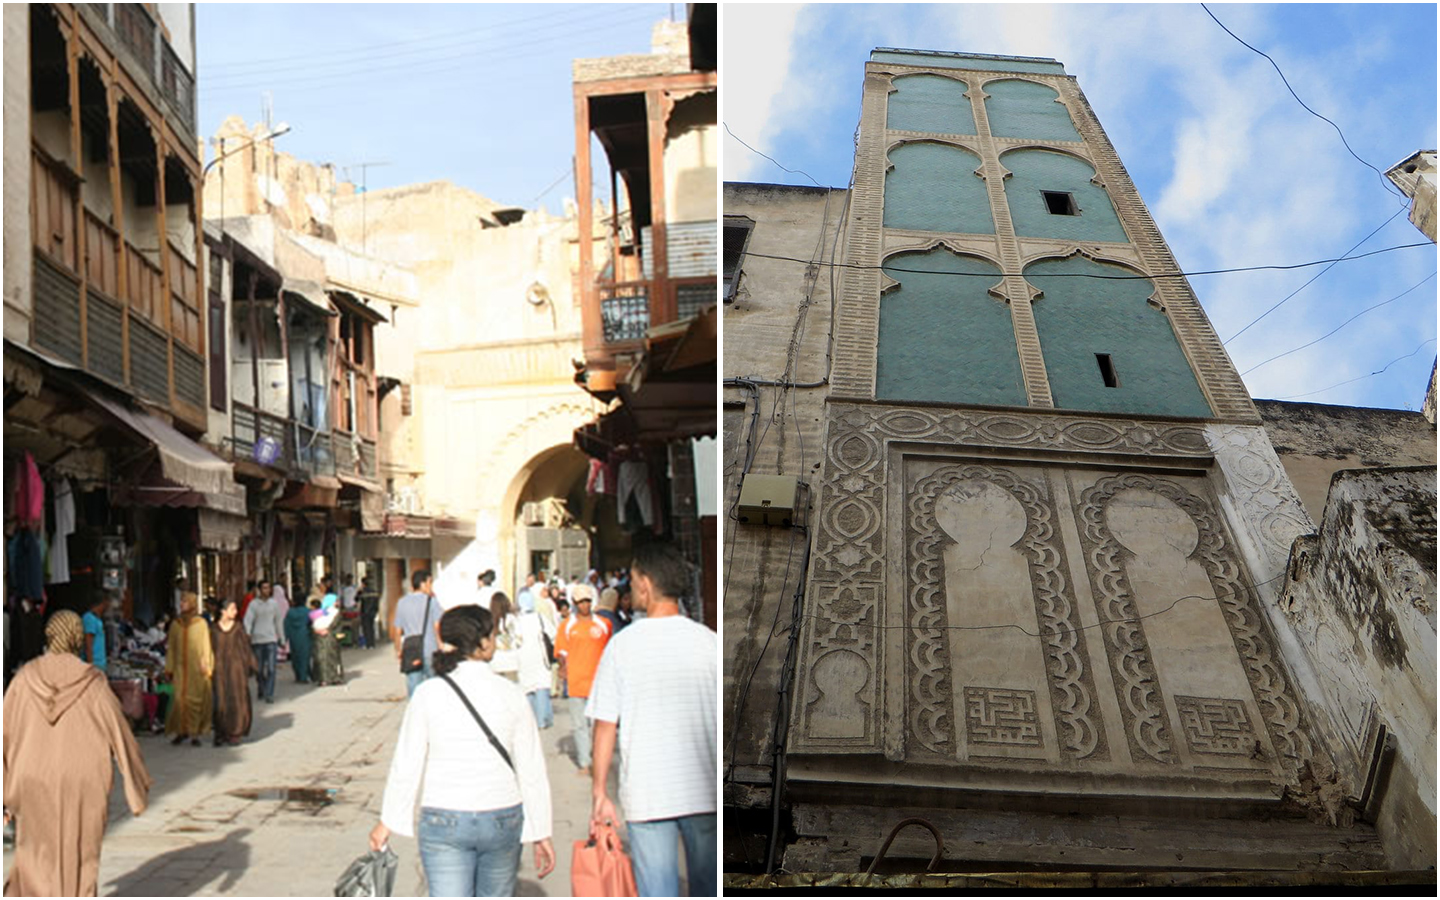 quartier andalouse morocco travel infos tourisme maroc fes